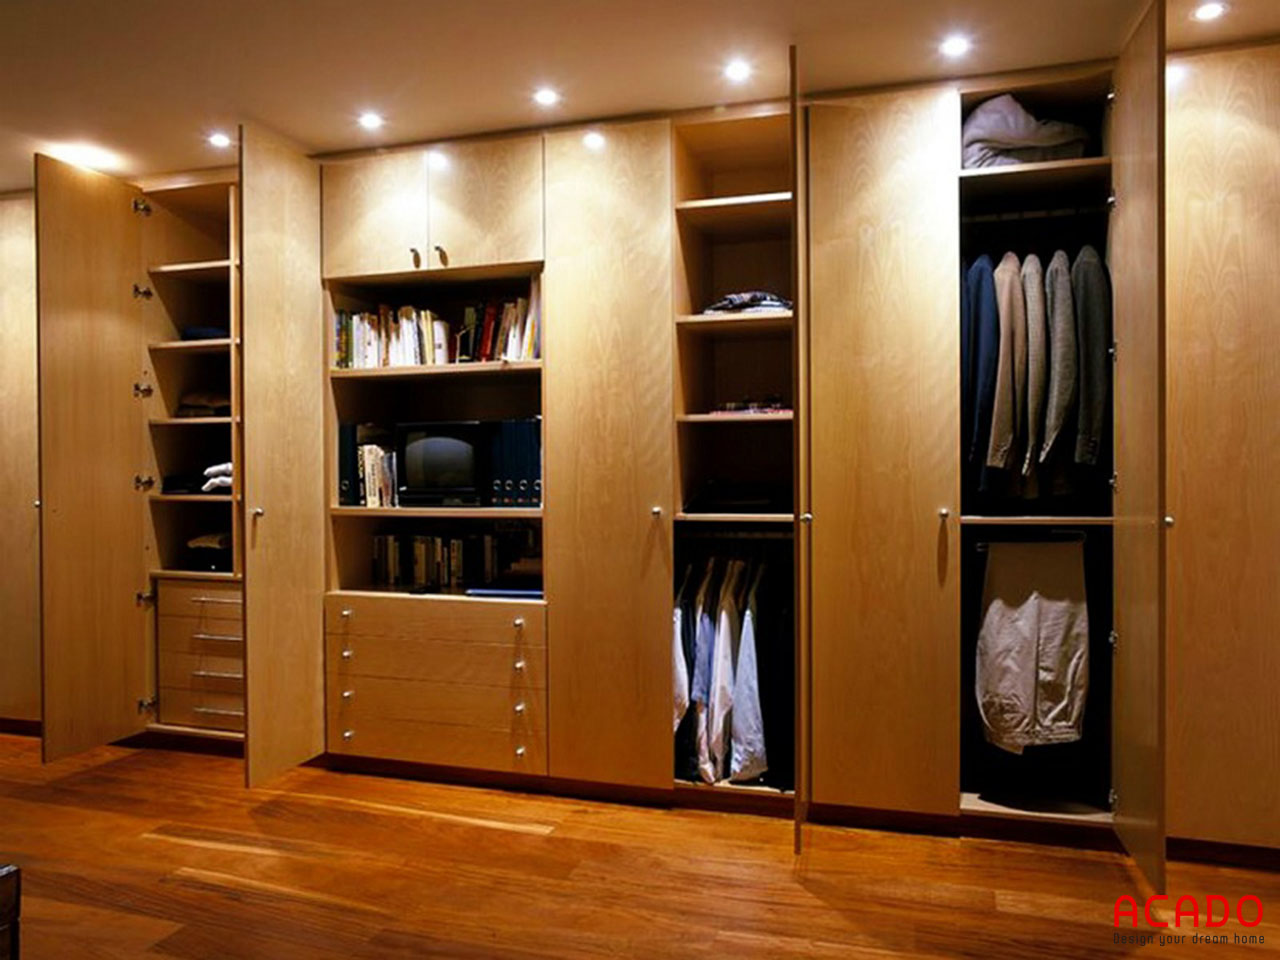 Mẫu 24 : tủ quần áo với nhiều ngăn tiện lợi, thoải mái không gian cho bạn để đồ